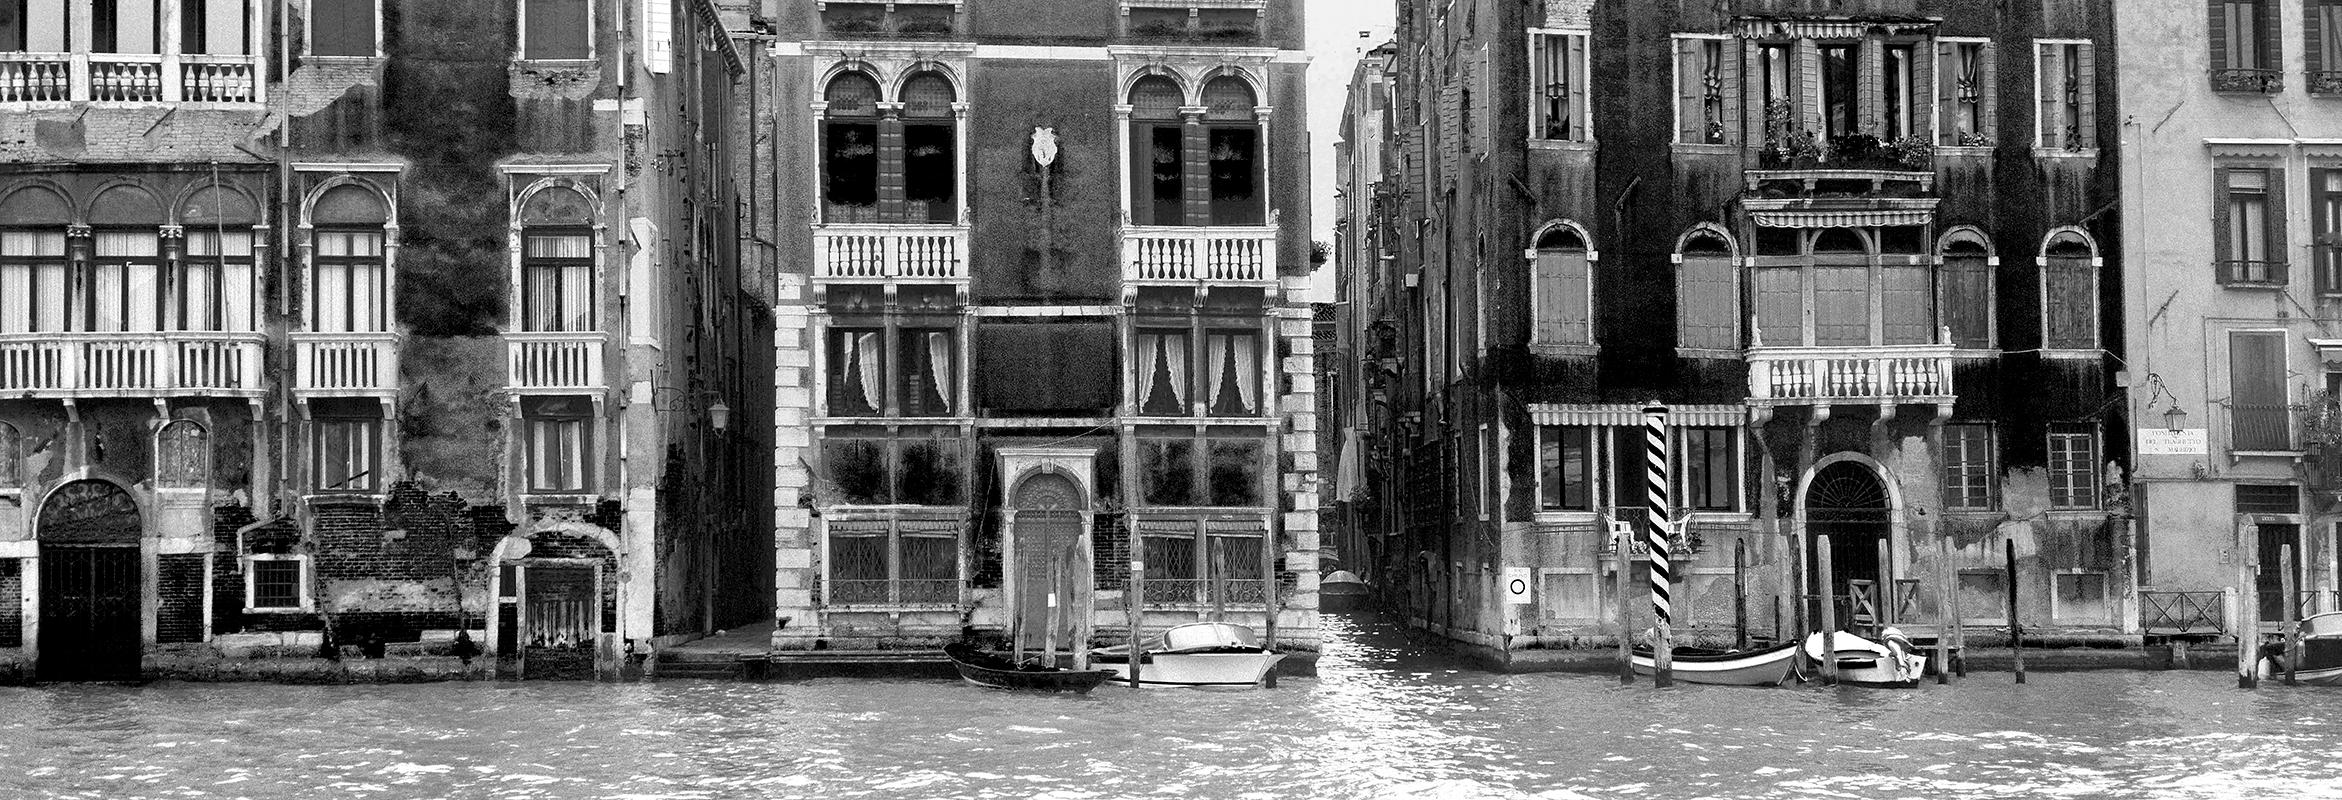 Ian Sanderson Black and White Photograph – Venice 2 – signierter zeitgenössischer Druck in limitierter Auflage, Schwarz-Weiß-Foto, Stadt